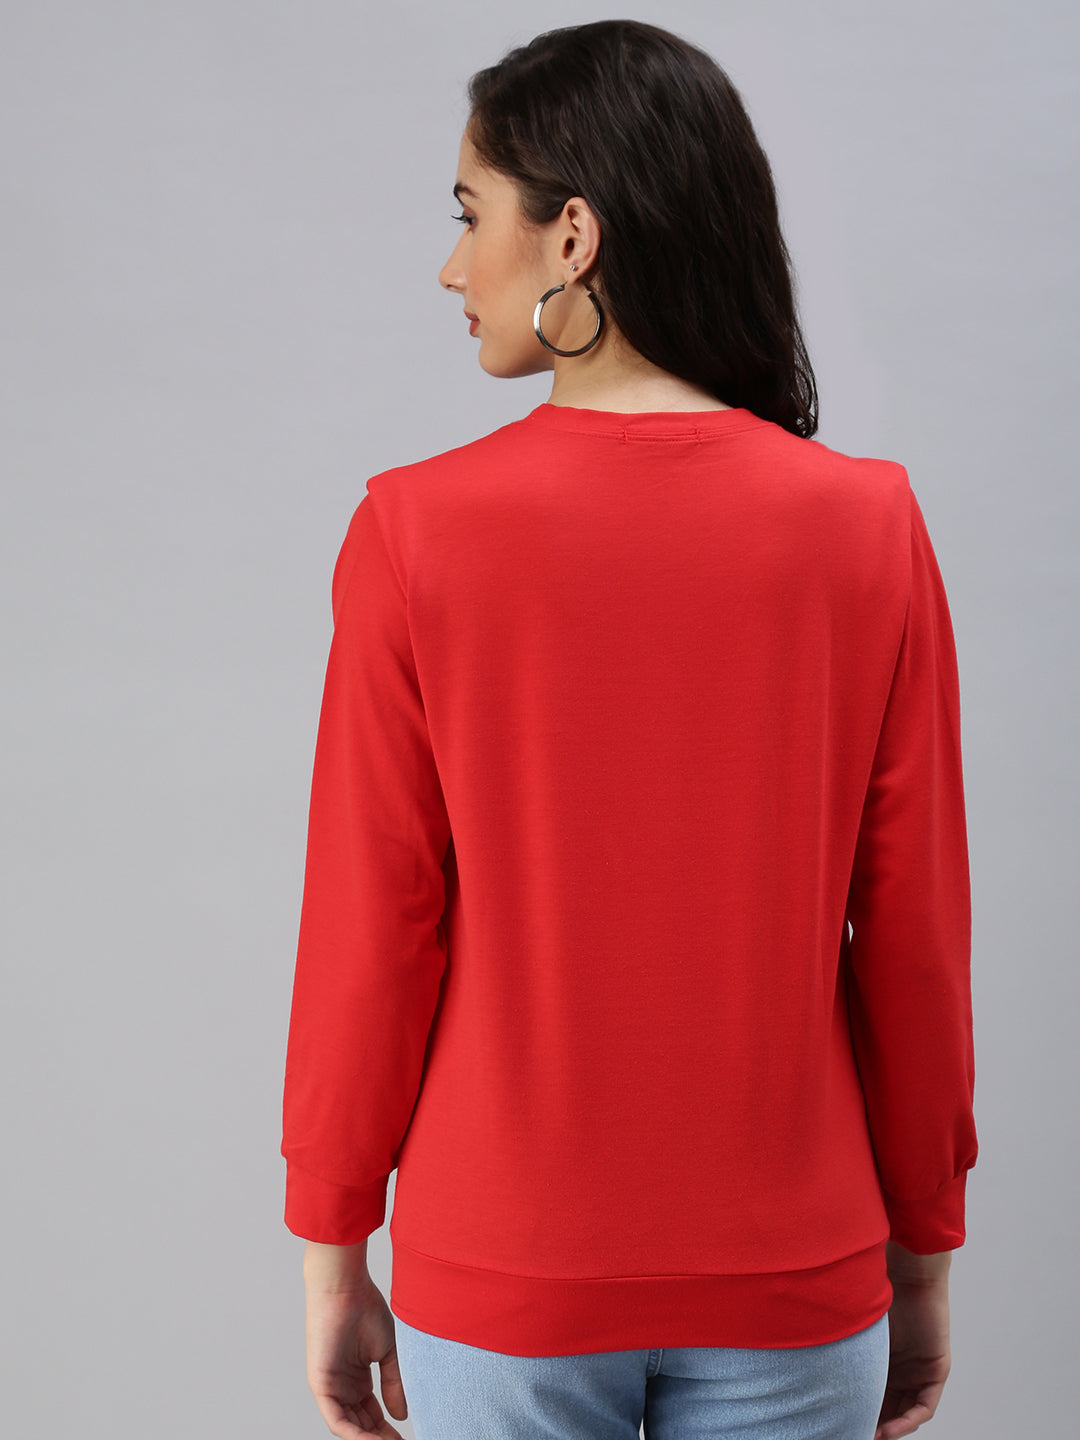 Women's Red Solid SweatShirt